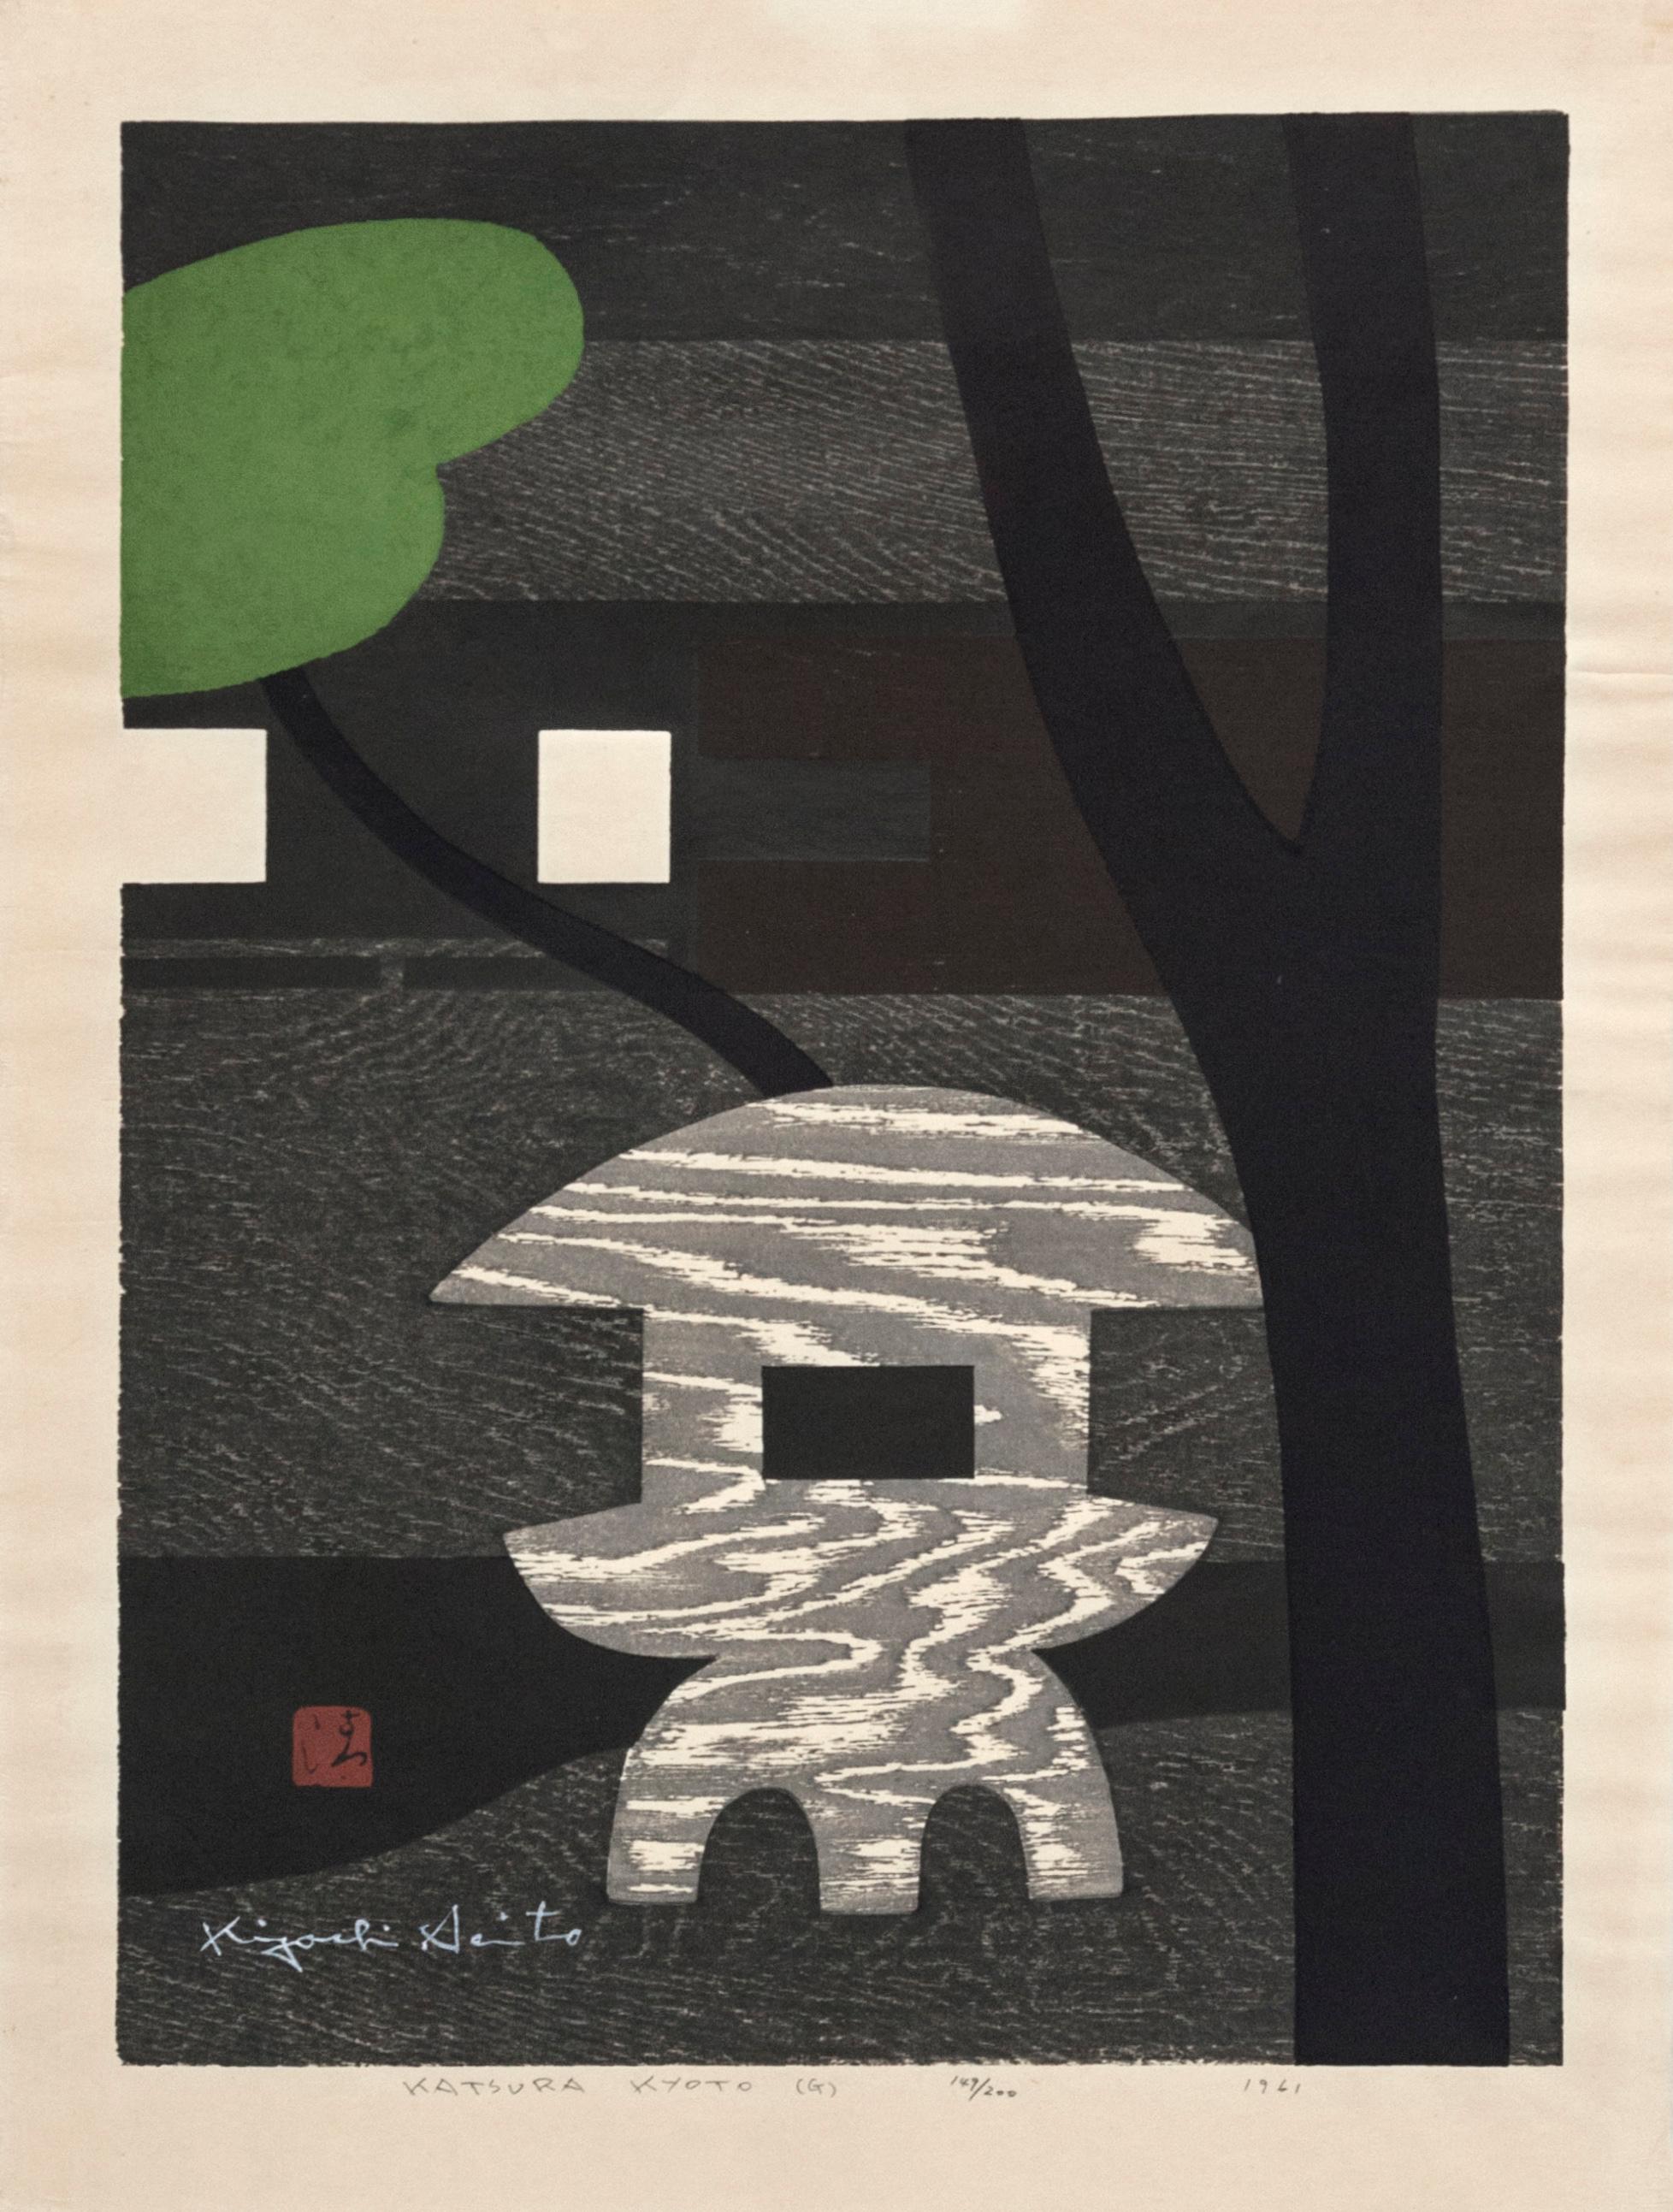 Kiyoshi Saitō Landscape Print - Kiyoshi Saito "Katsura Kyoto" Woodblock Print, 1961